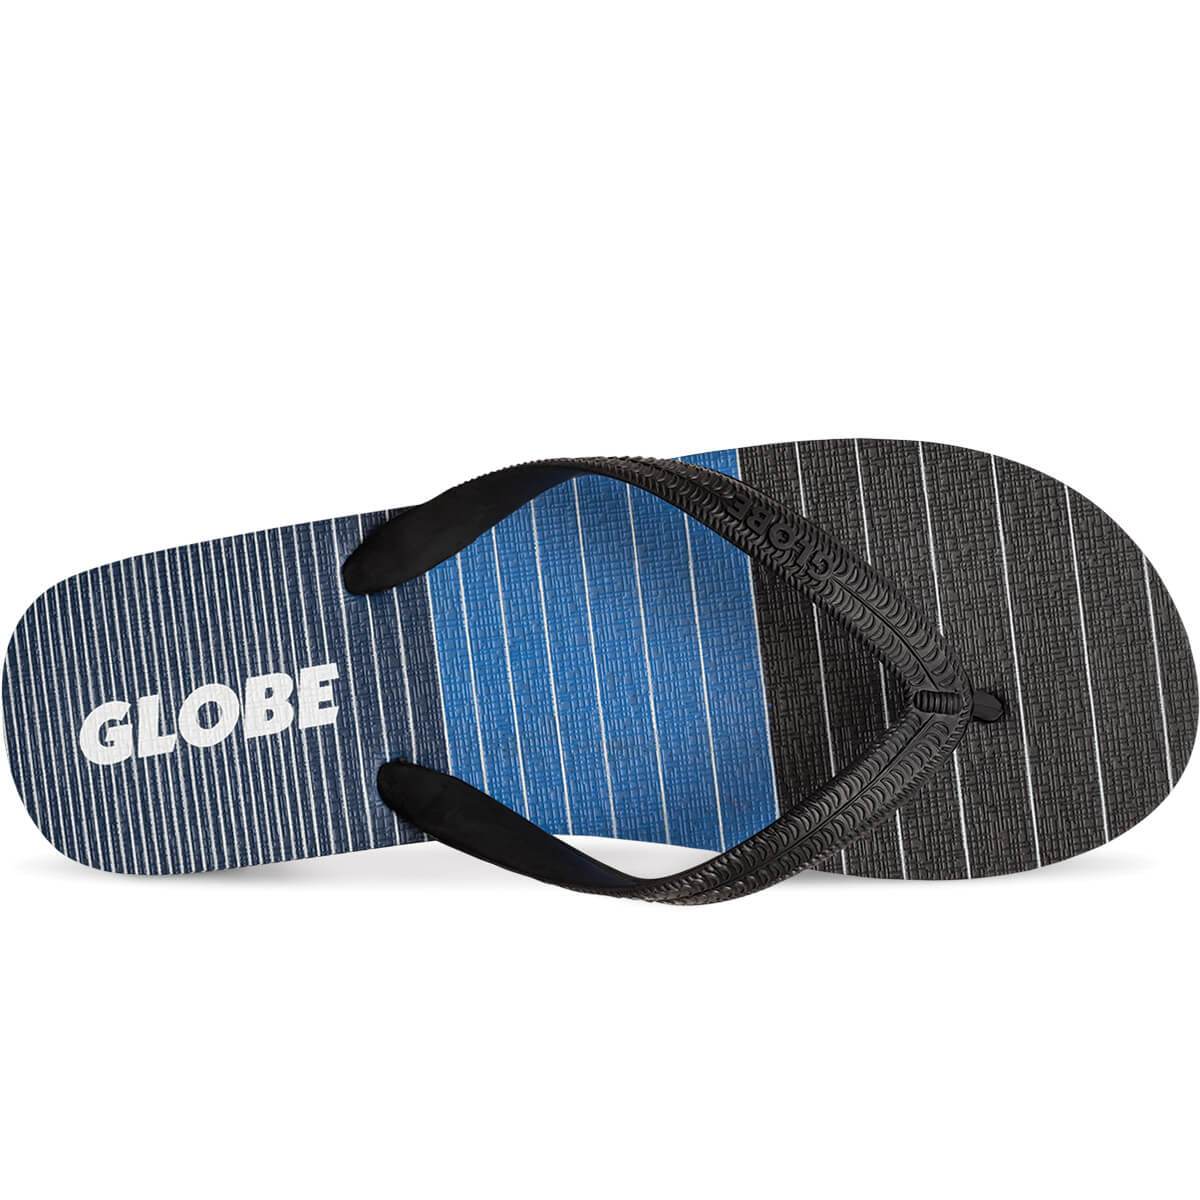 Globe Aggro slippers black / blue / grey